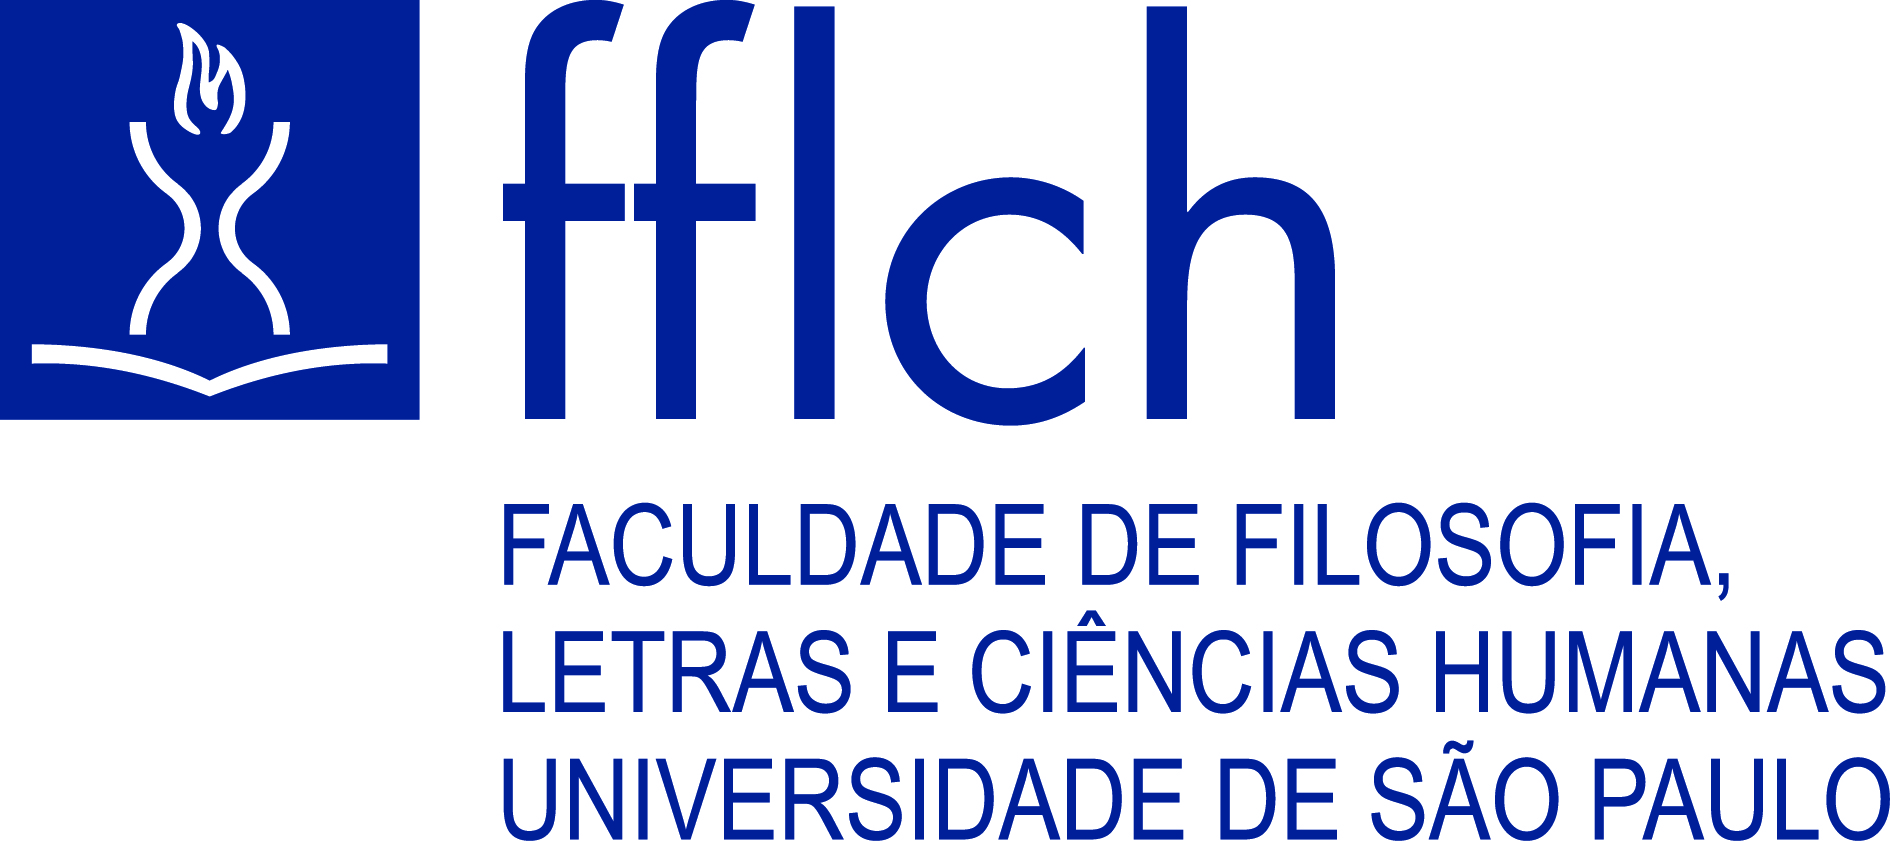 Logo da Faculdade de Filosofia, Letras e Ciências Humanas